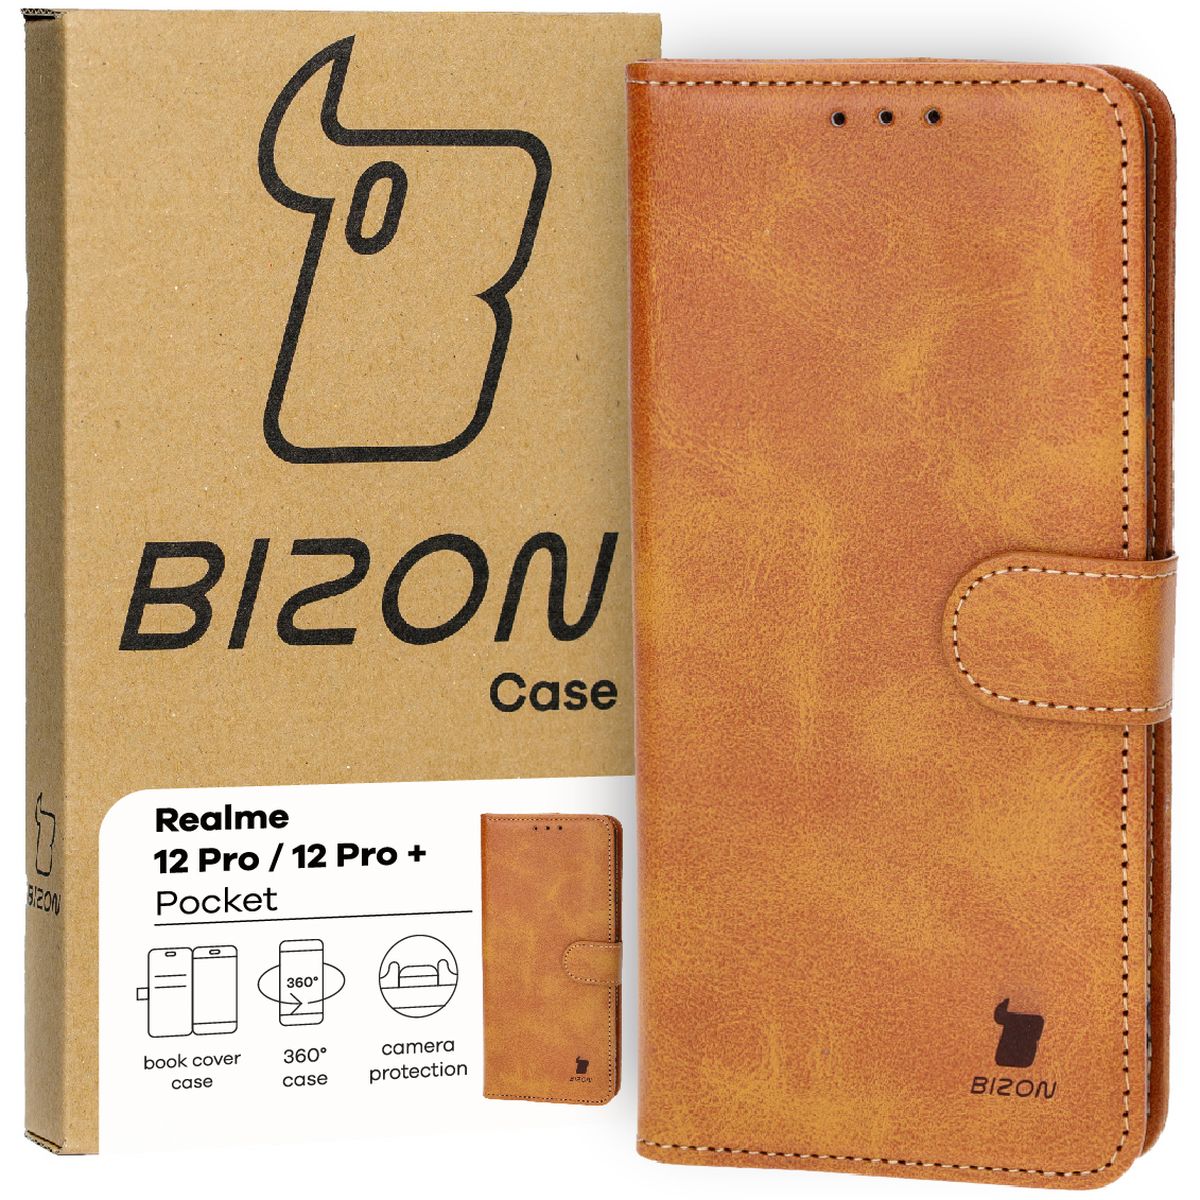 Schutzhülle für Realme 12 Pro / 12 Pro+, Bizon Case Pocket, Braun